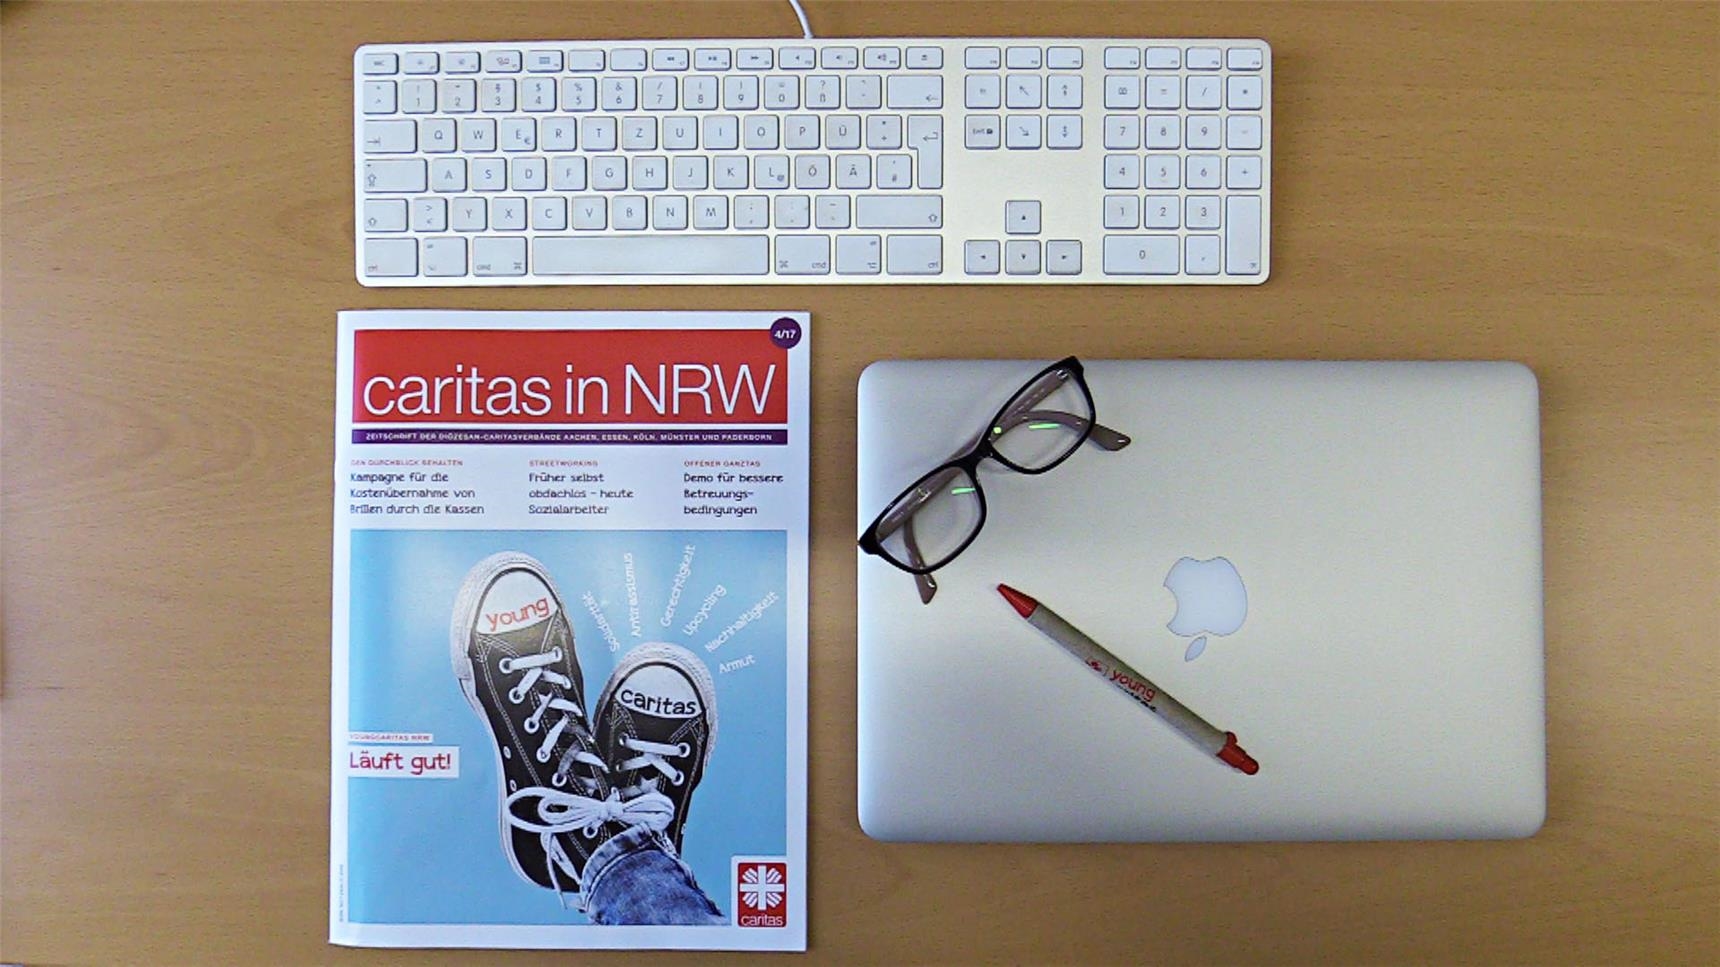 Auf einem Schreibtisch liegen die Zeitschrift "caritas in NRW", ein Laptop und eine Tastatur.